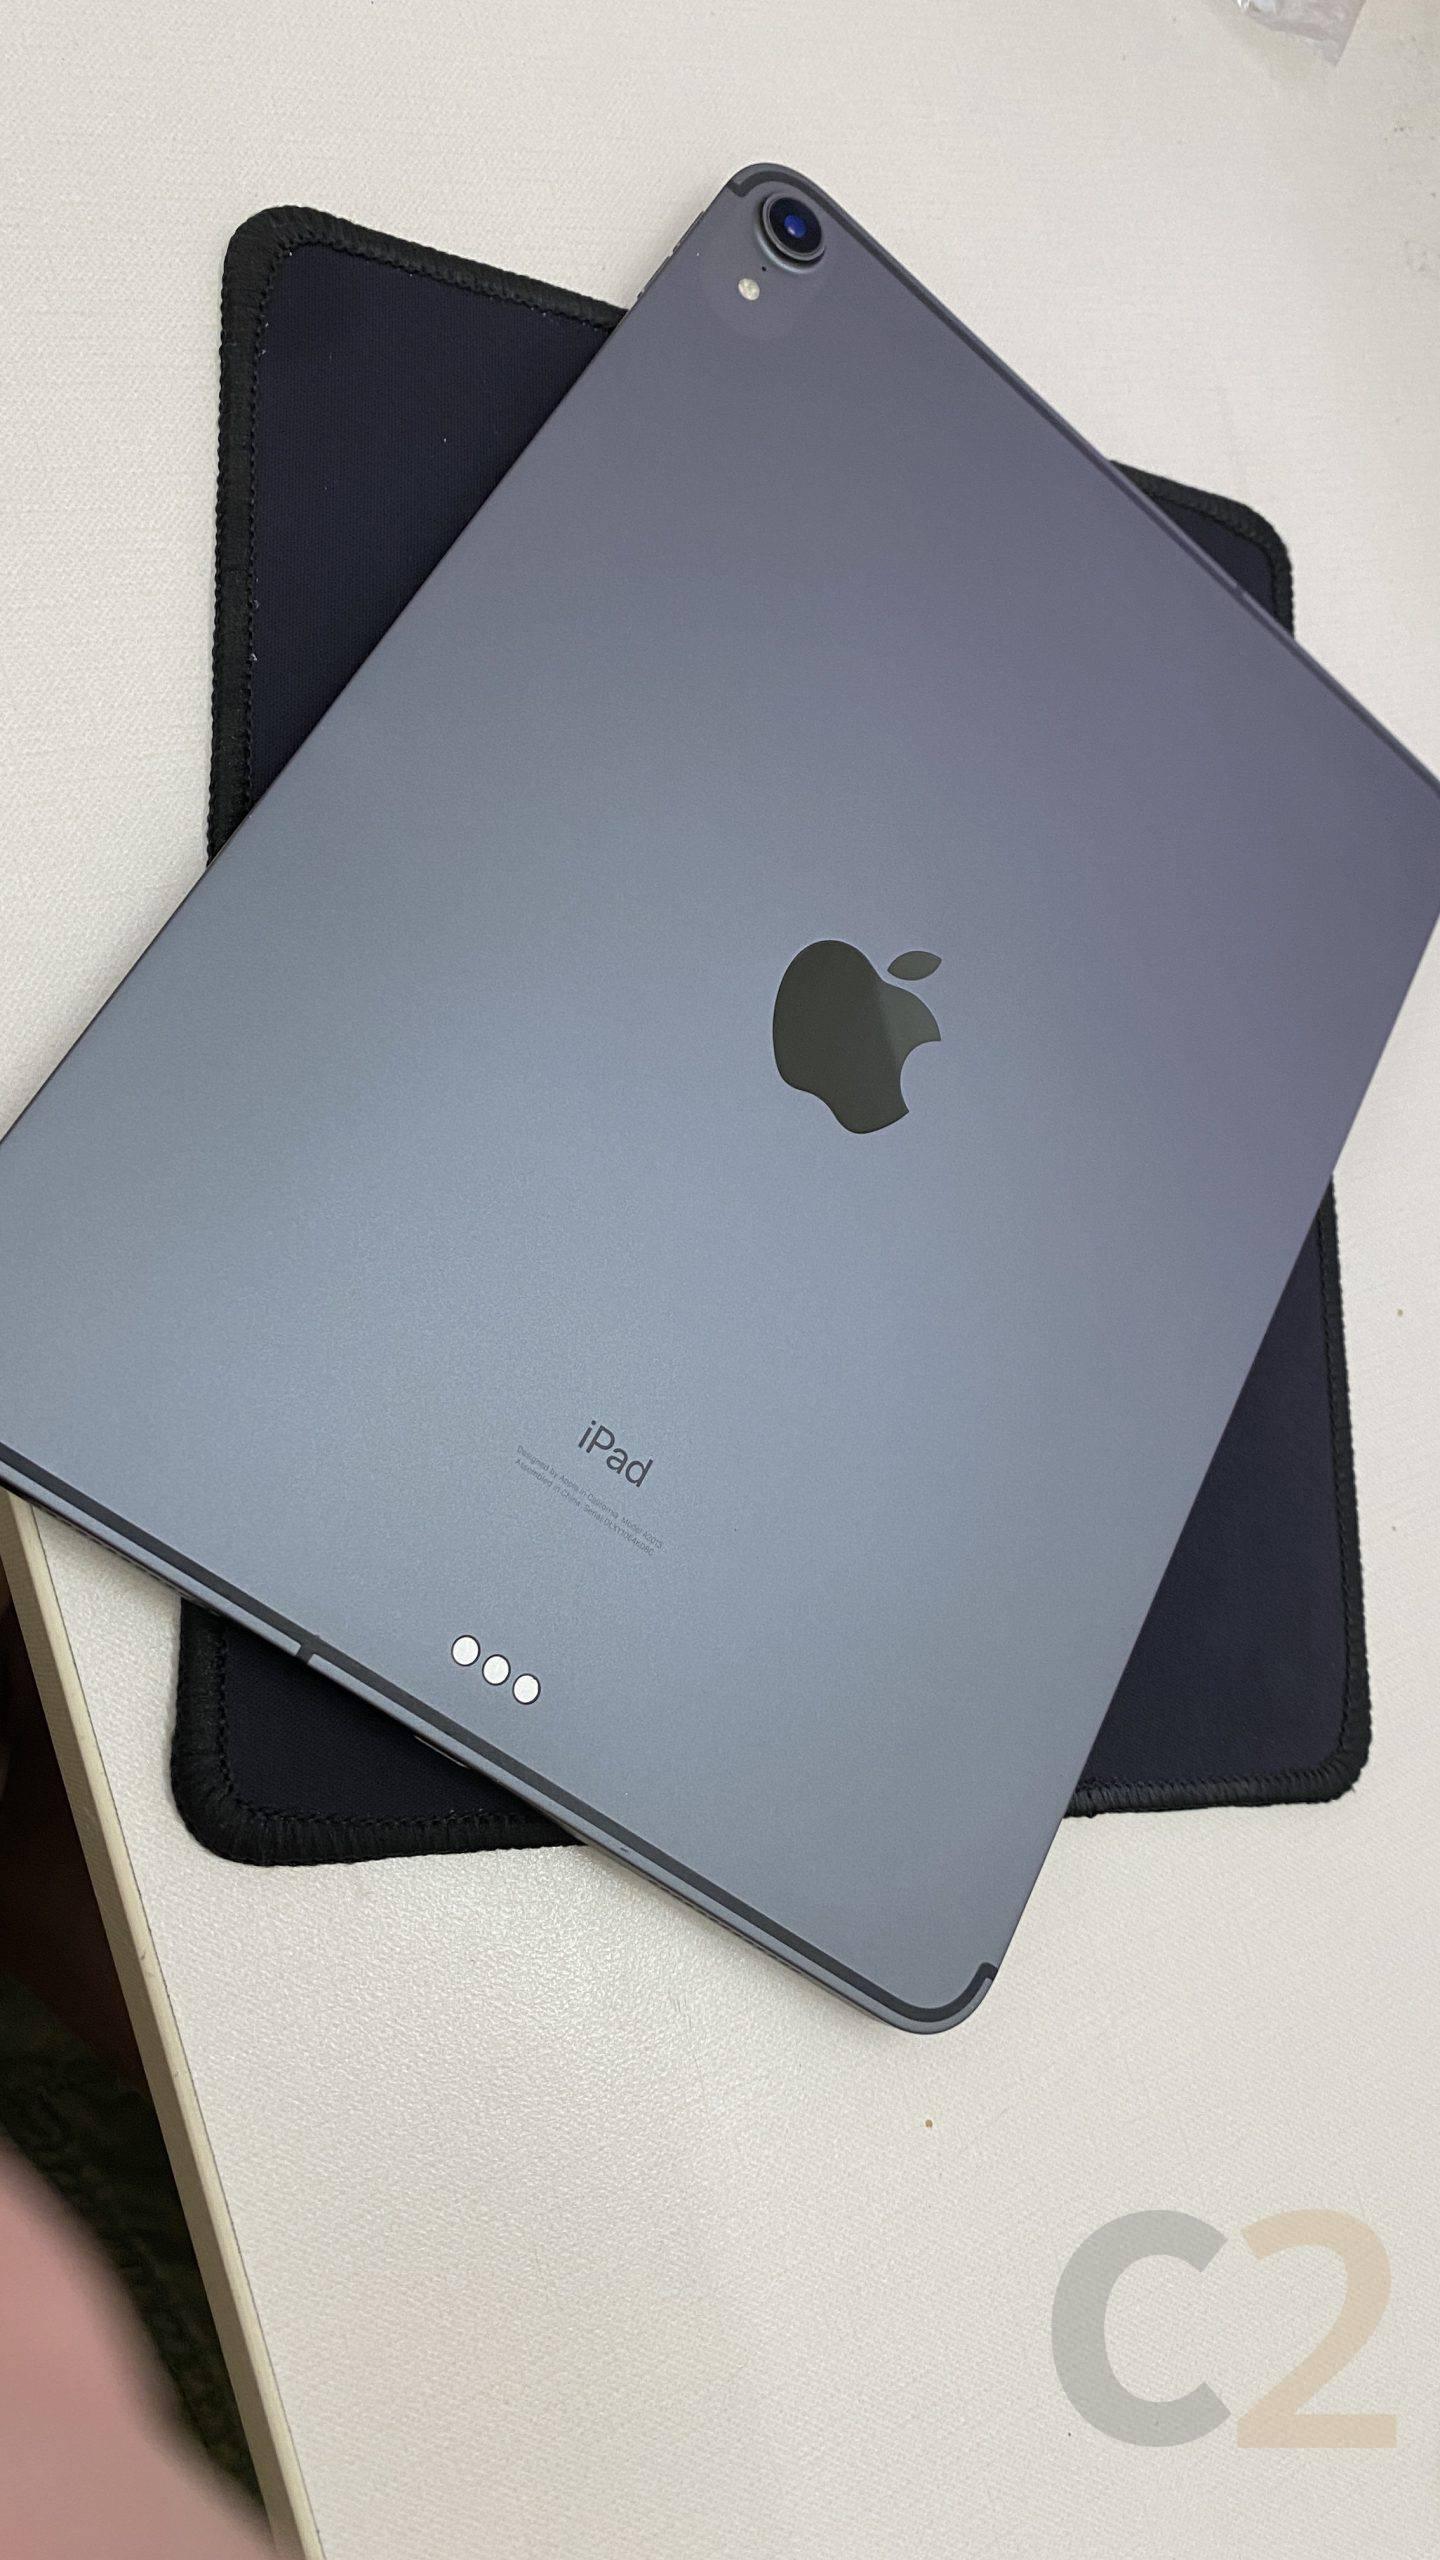 (特價一台) APPLE iPad Pro 3rd Gen 2018 11inch inch 256G LTE版 85-90% NEW (SPACE GRAY) - C2 Computer